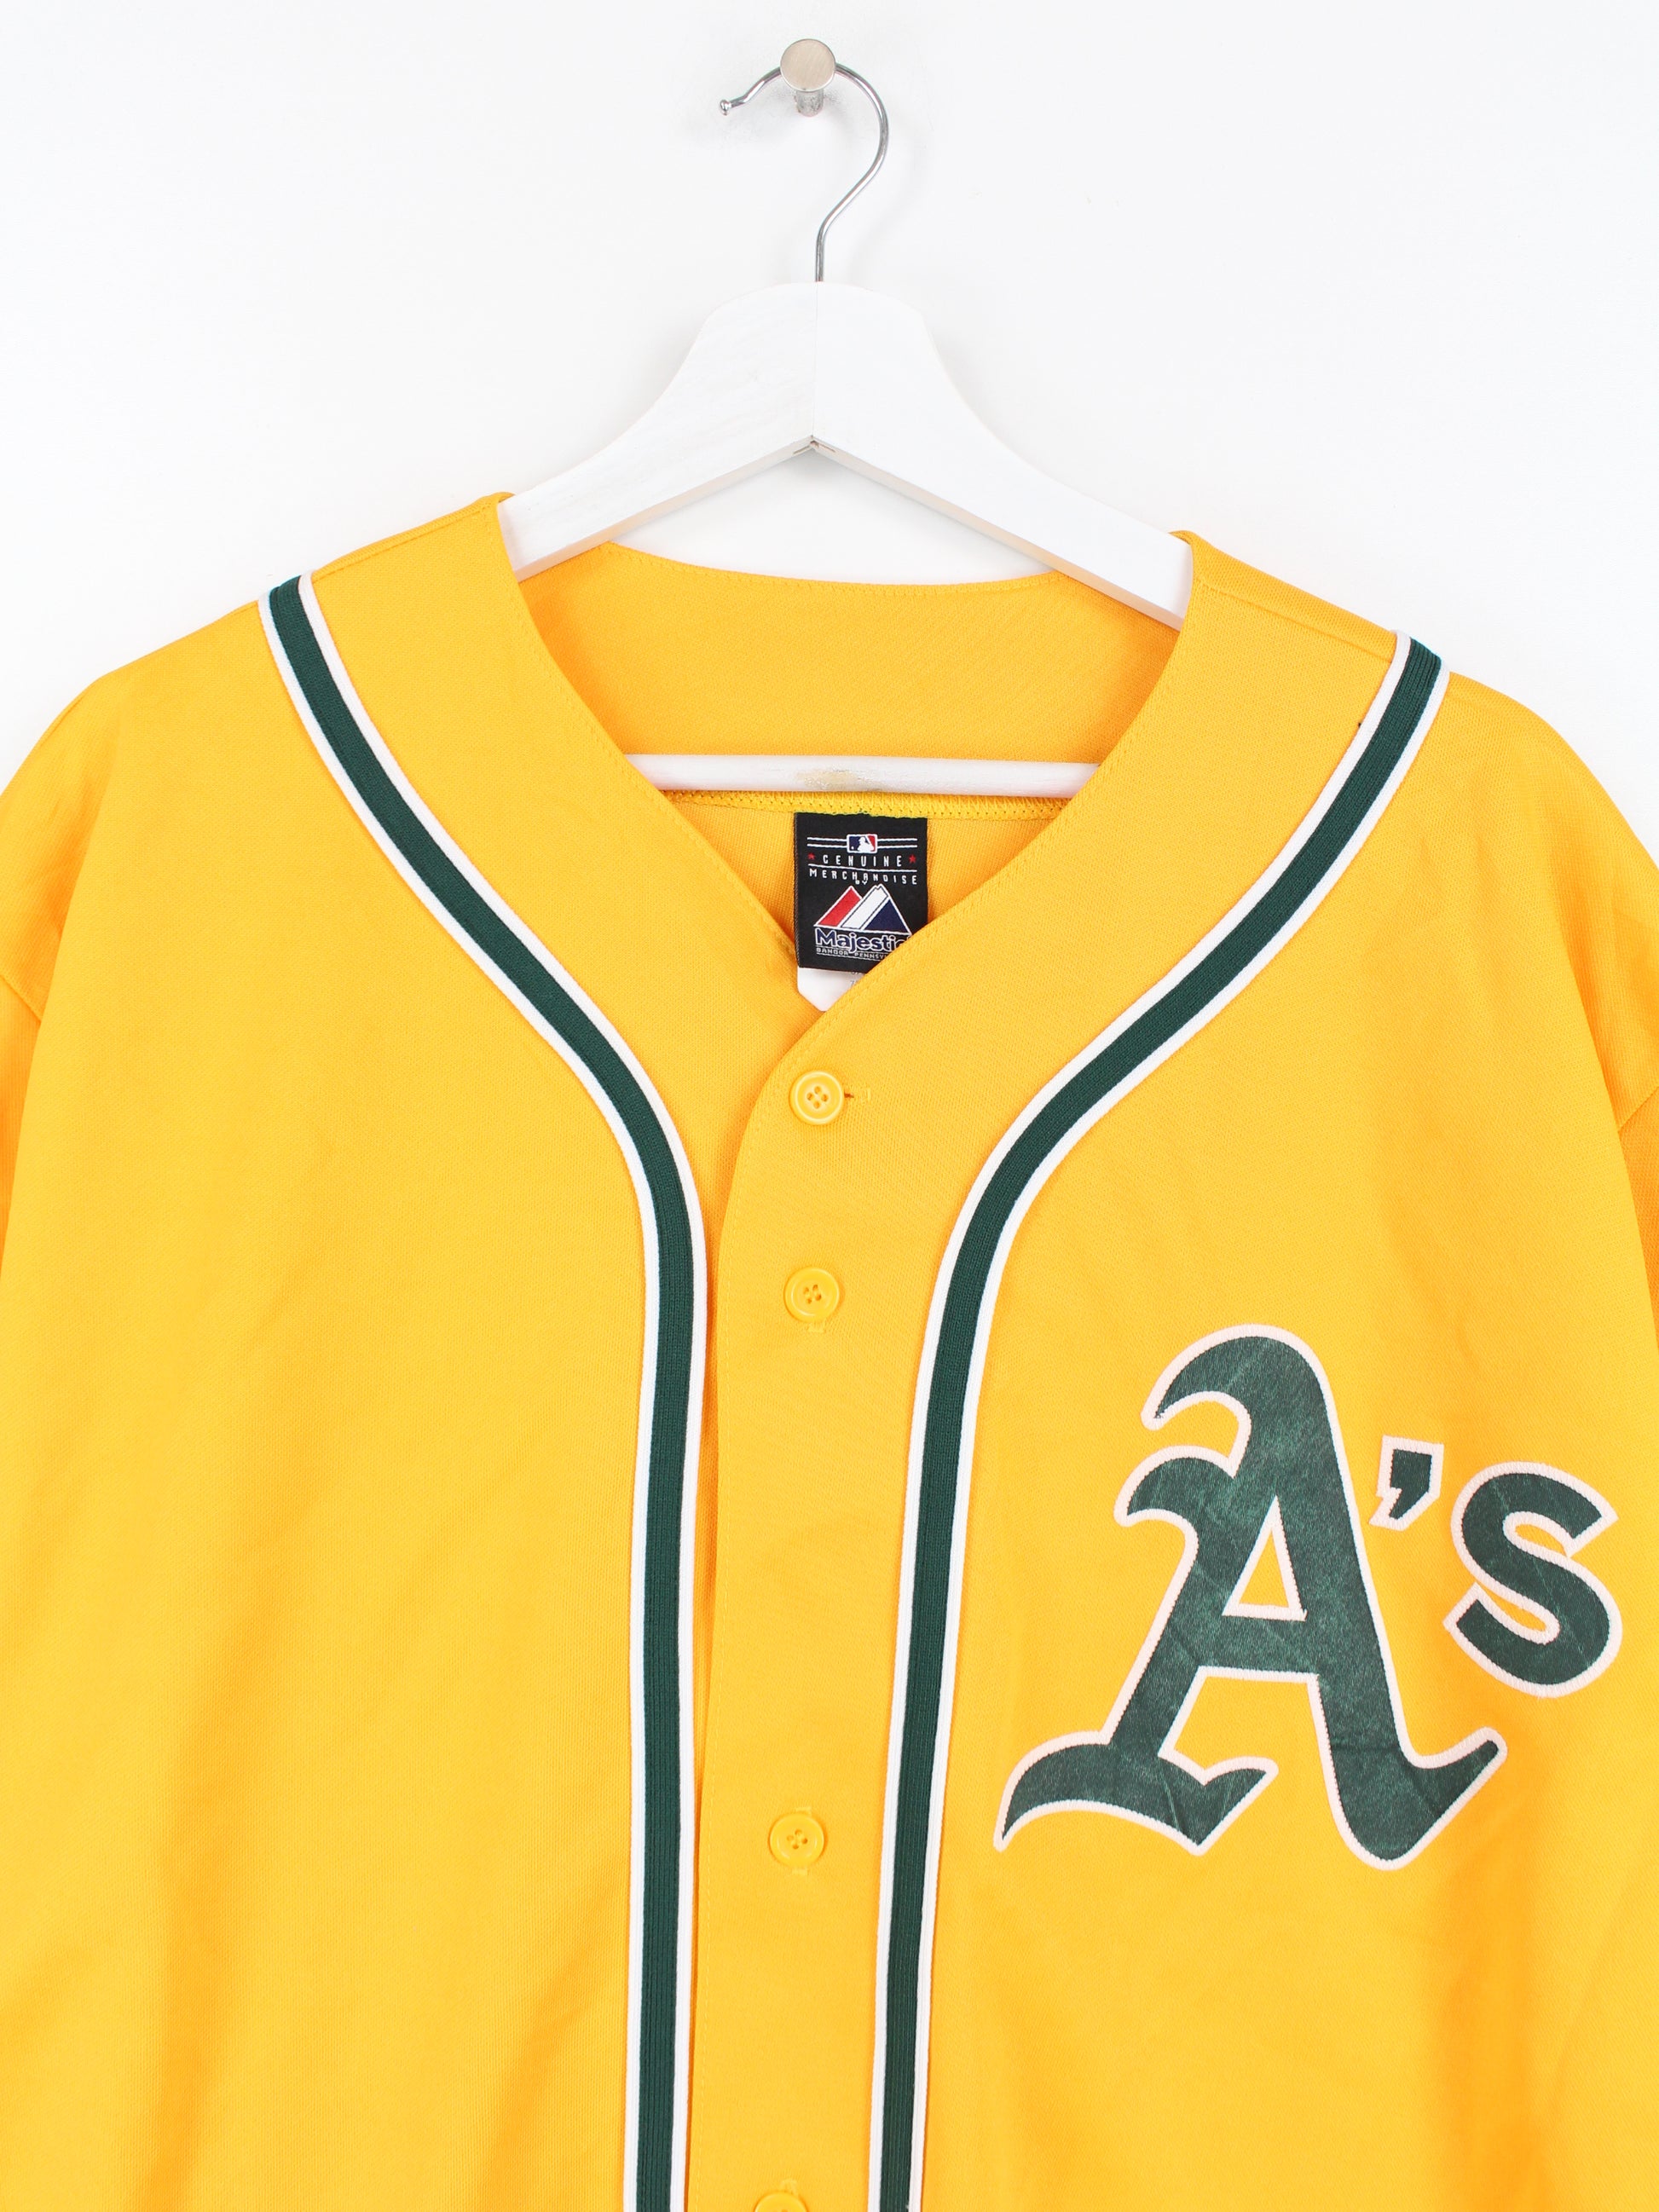 MLB Oakland Athletics Jersey Yellow XL – Peeces